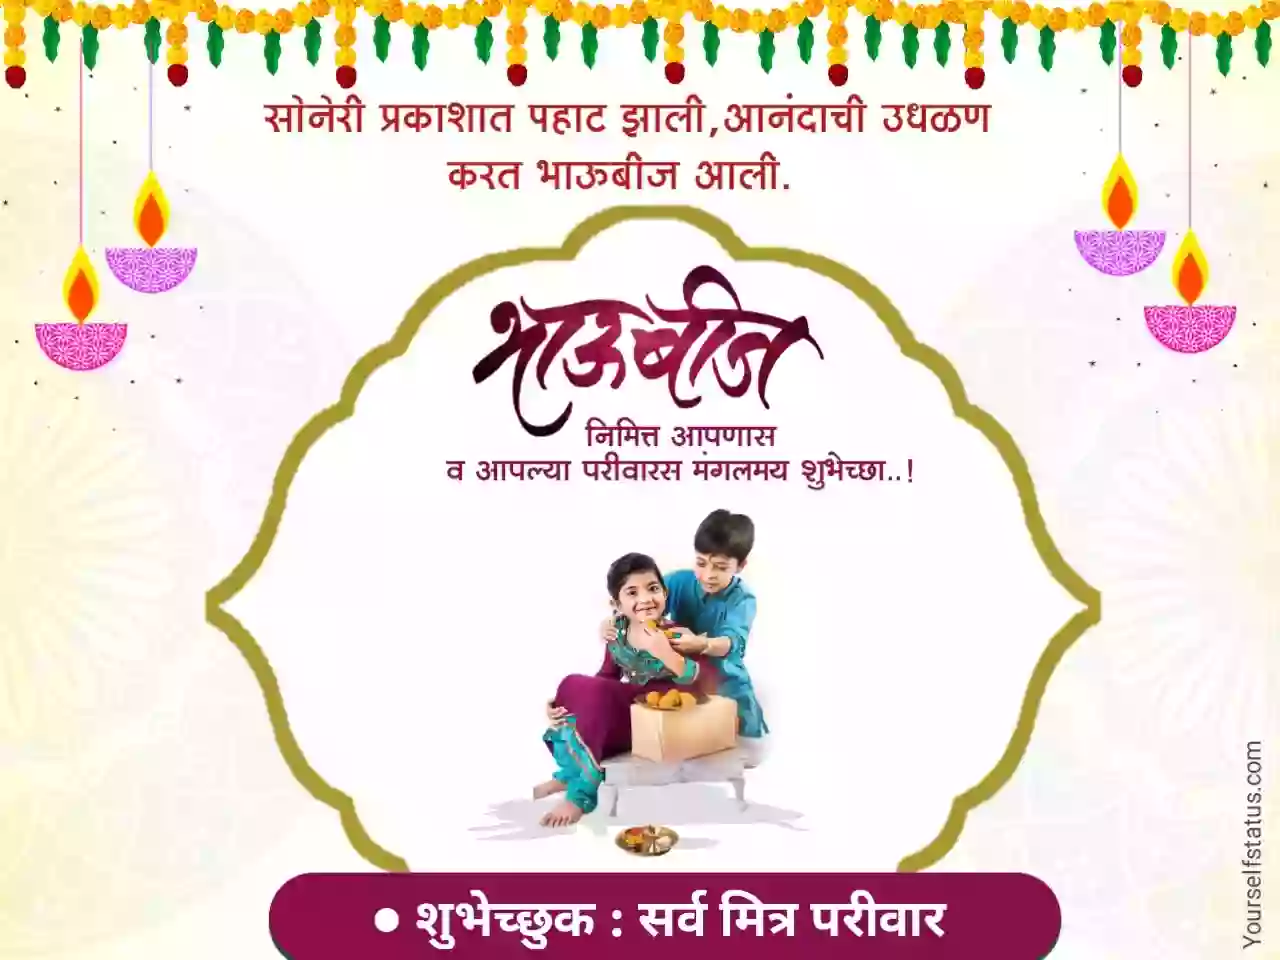 happy bhaubeej wishes in marathi